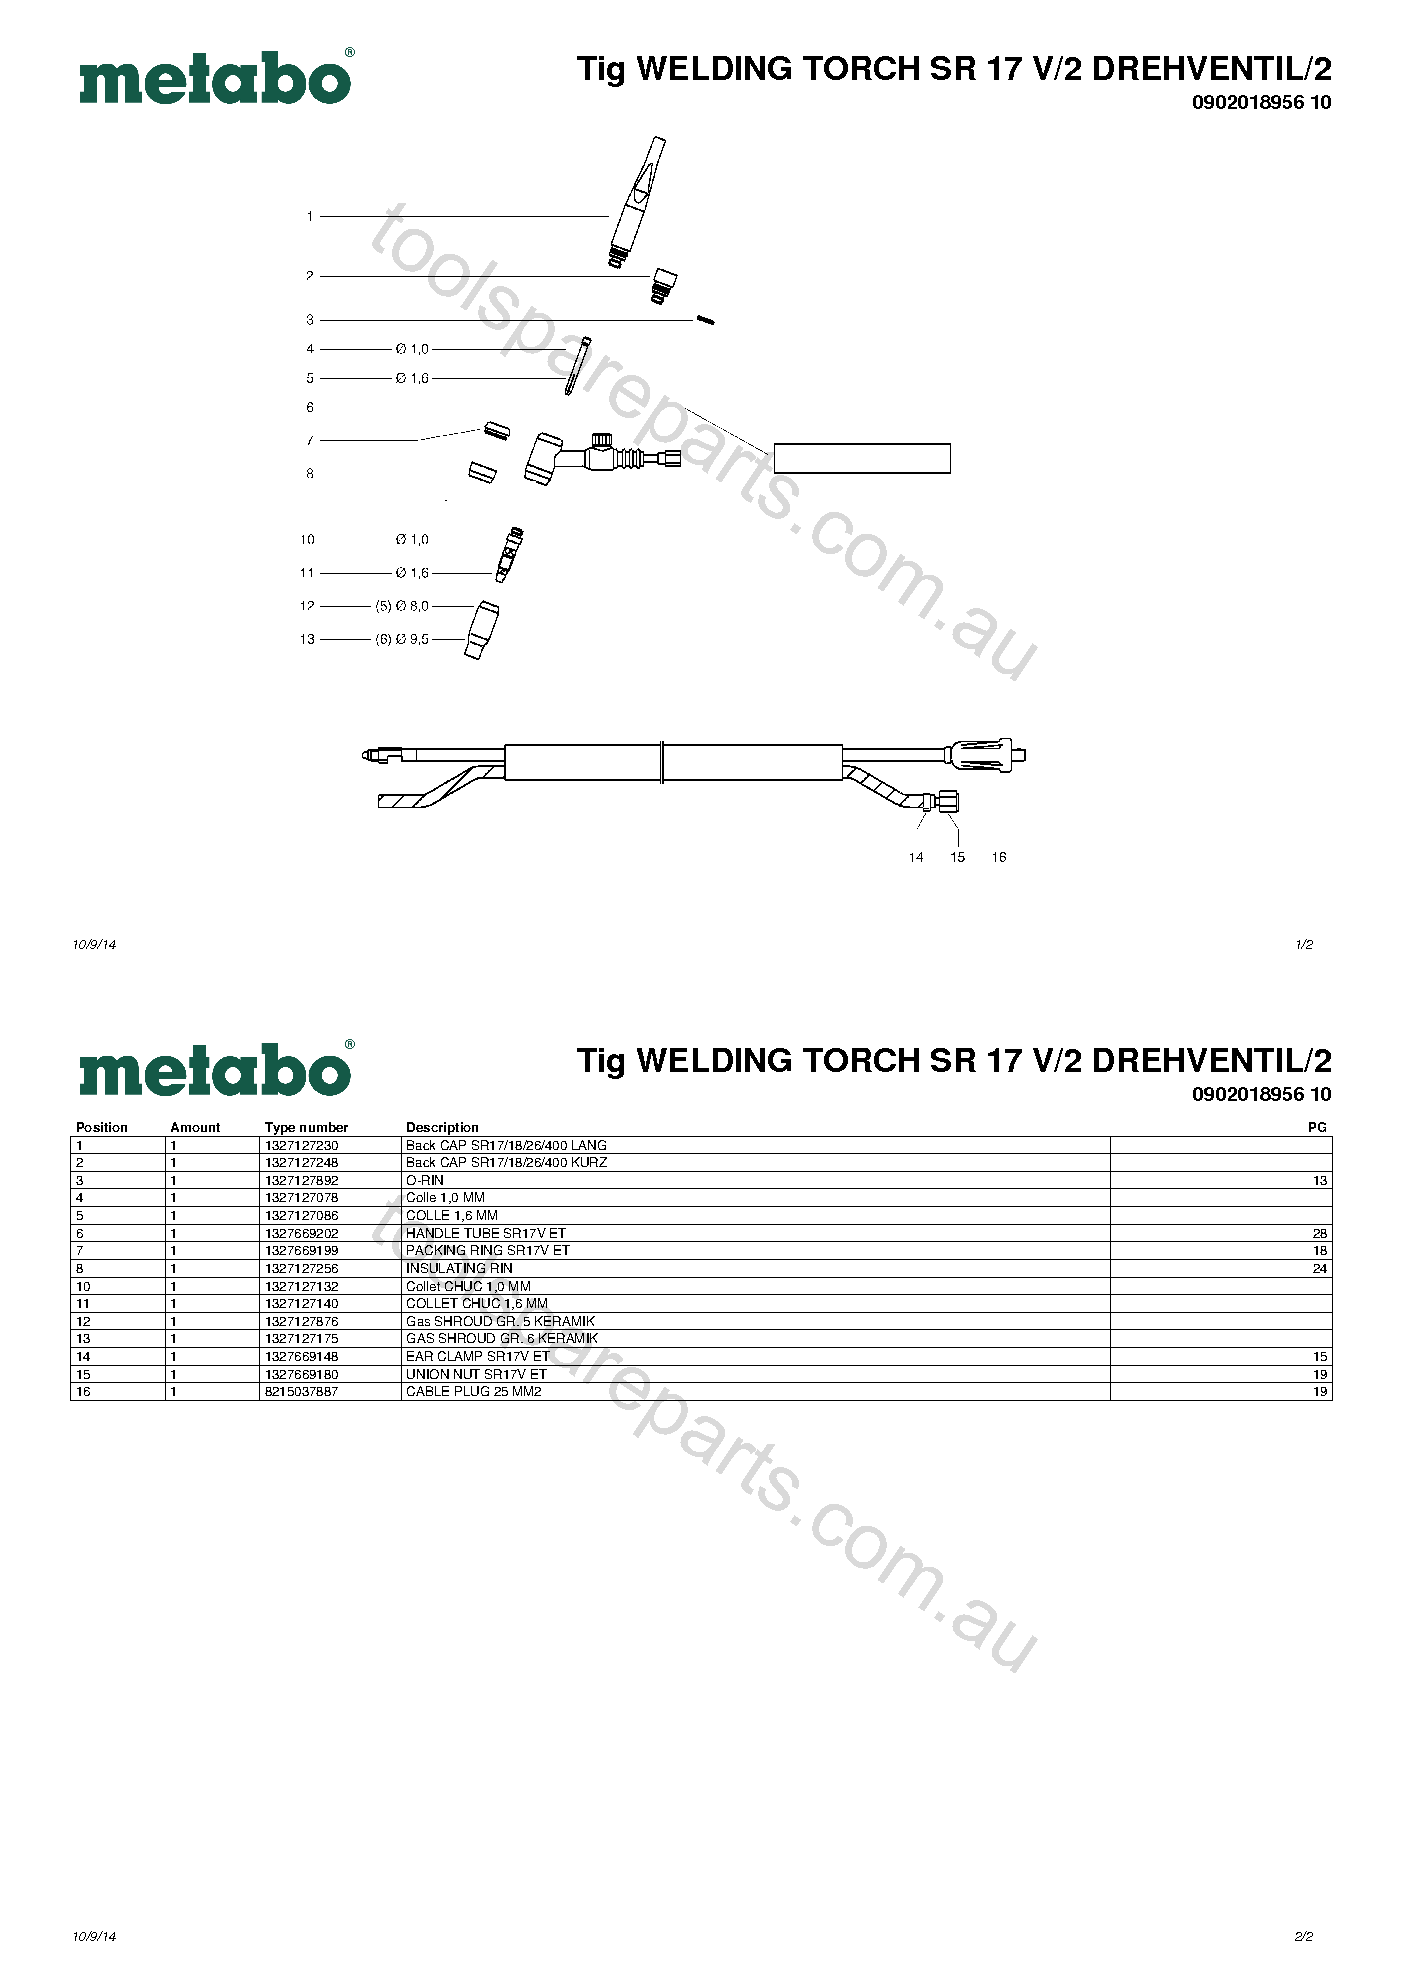 Metabo Tig WELDING TORCH SR 17 V/2 DREHVENTIL/2 0902018956 10  Diagram 1